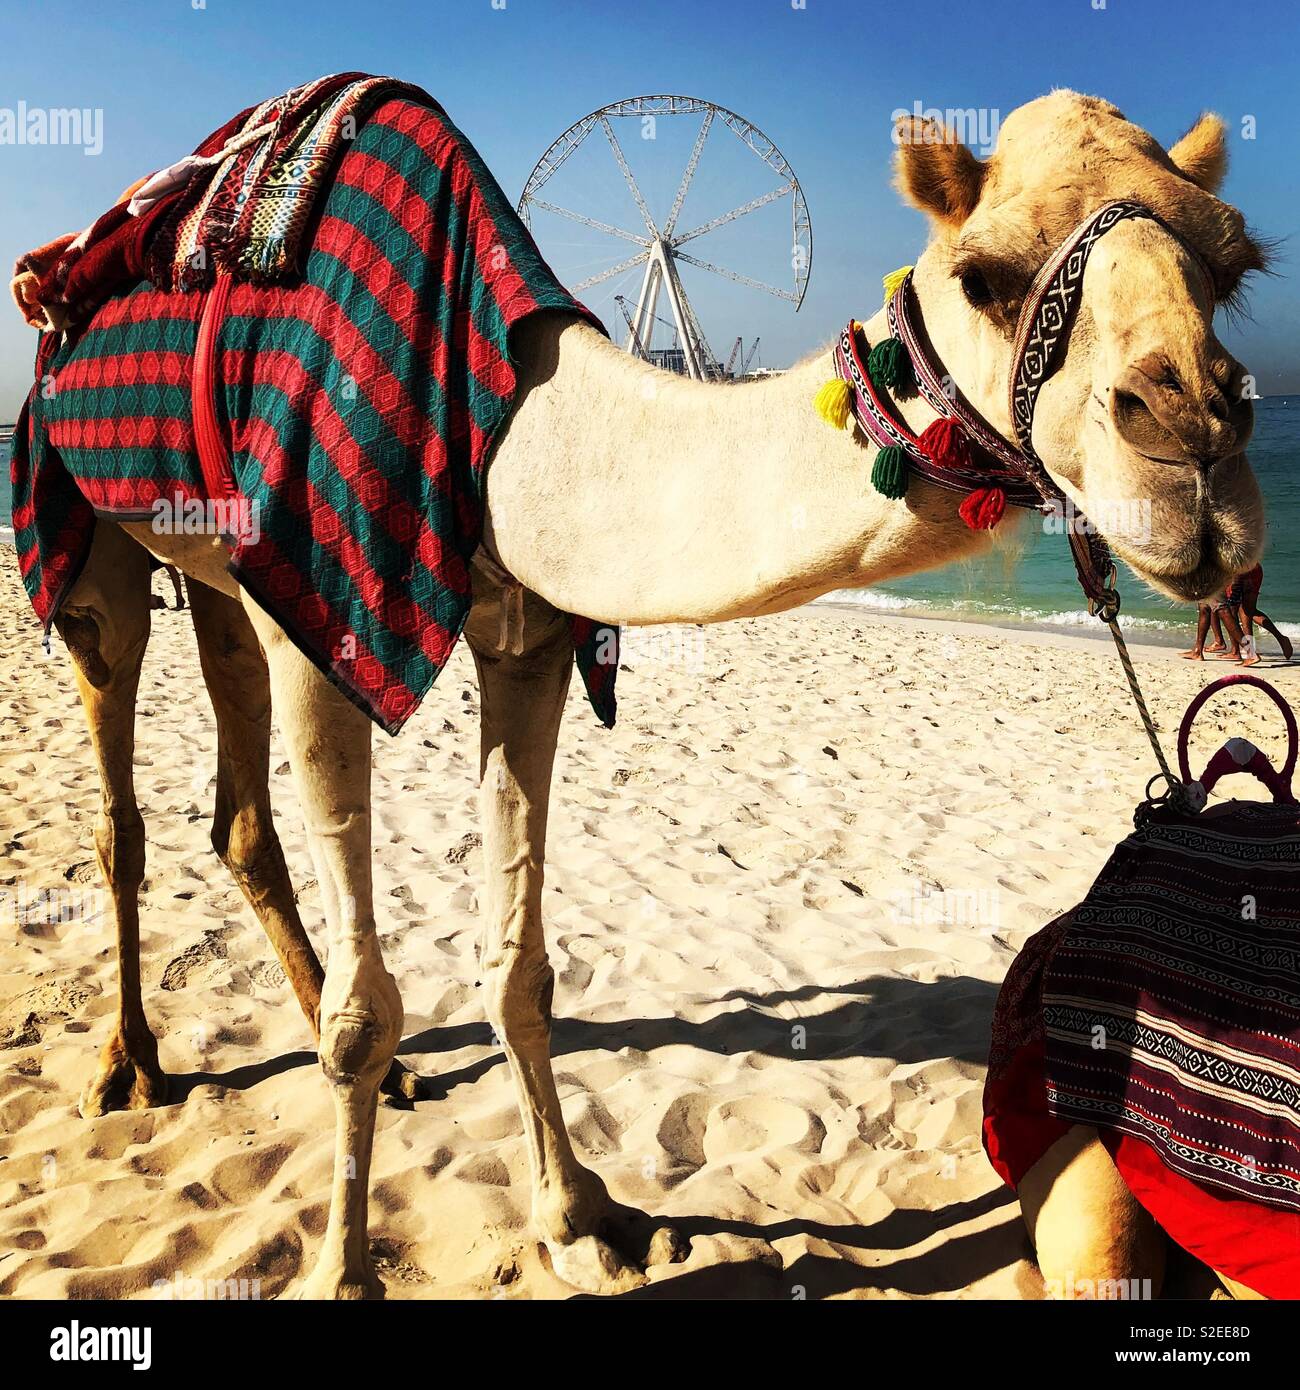 Camel on Dubai beach Stock Photo